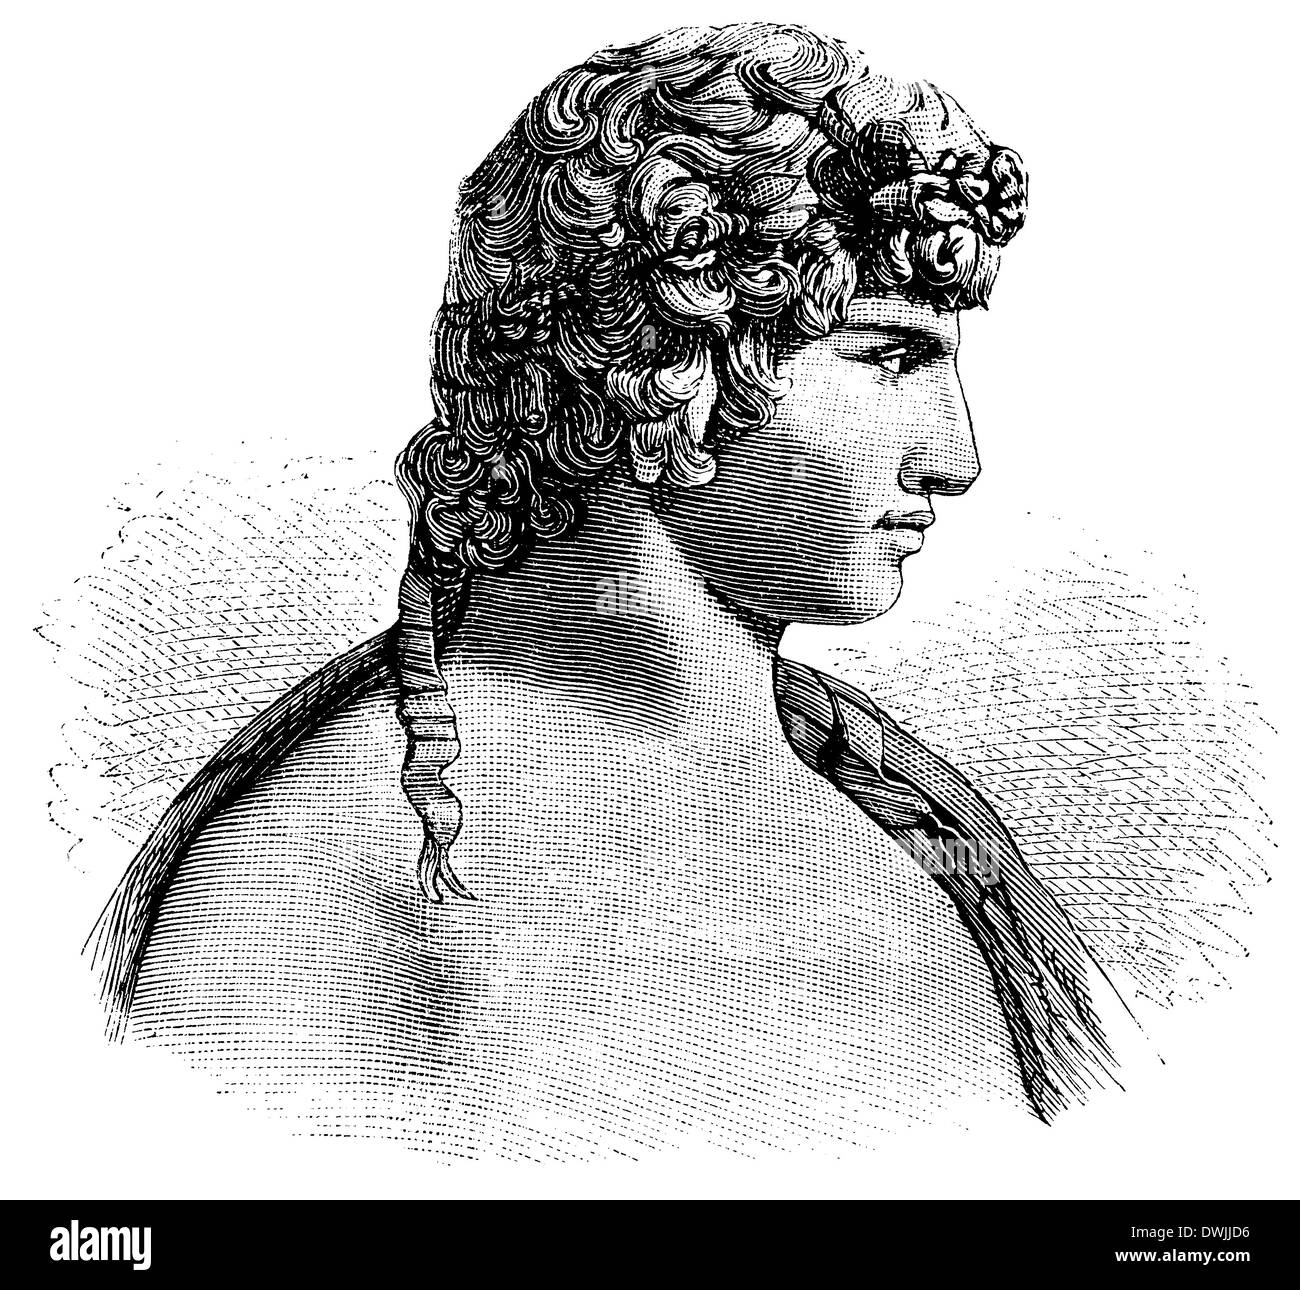 Antinoo, Antinoos (nato c. Novembre 27,[1] 111, morì il 30 ottobre 130), membro dell'entourage dell'imperatore romano Adriano e la sua amante Foto Stock